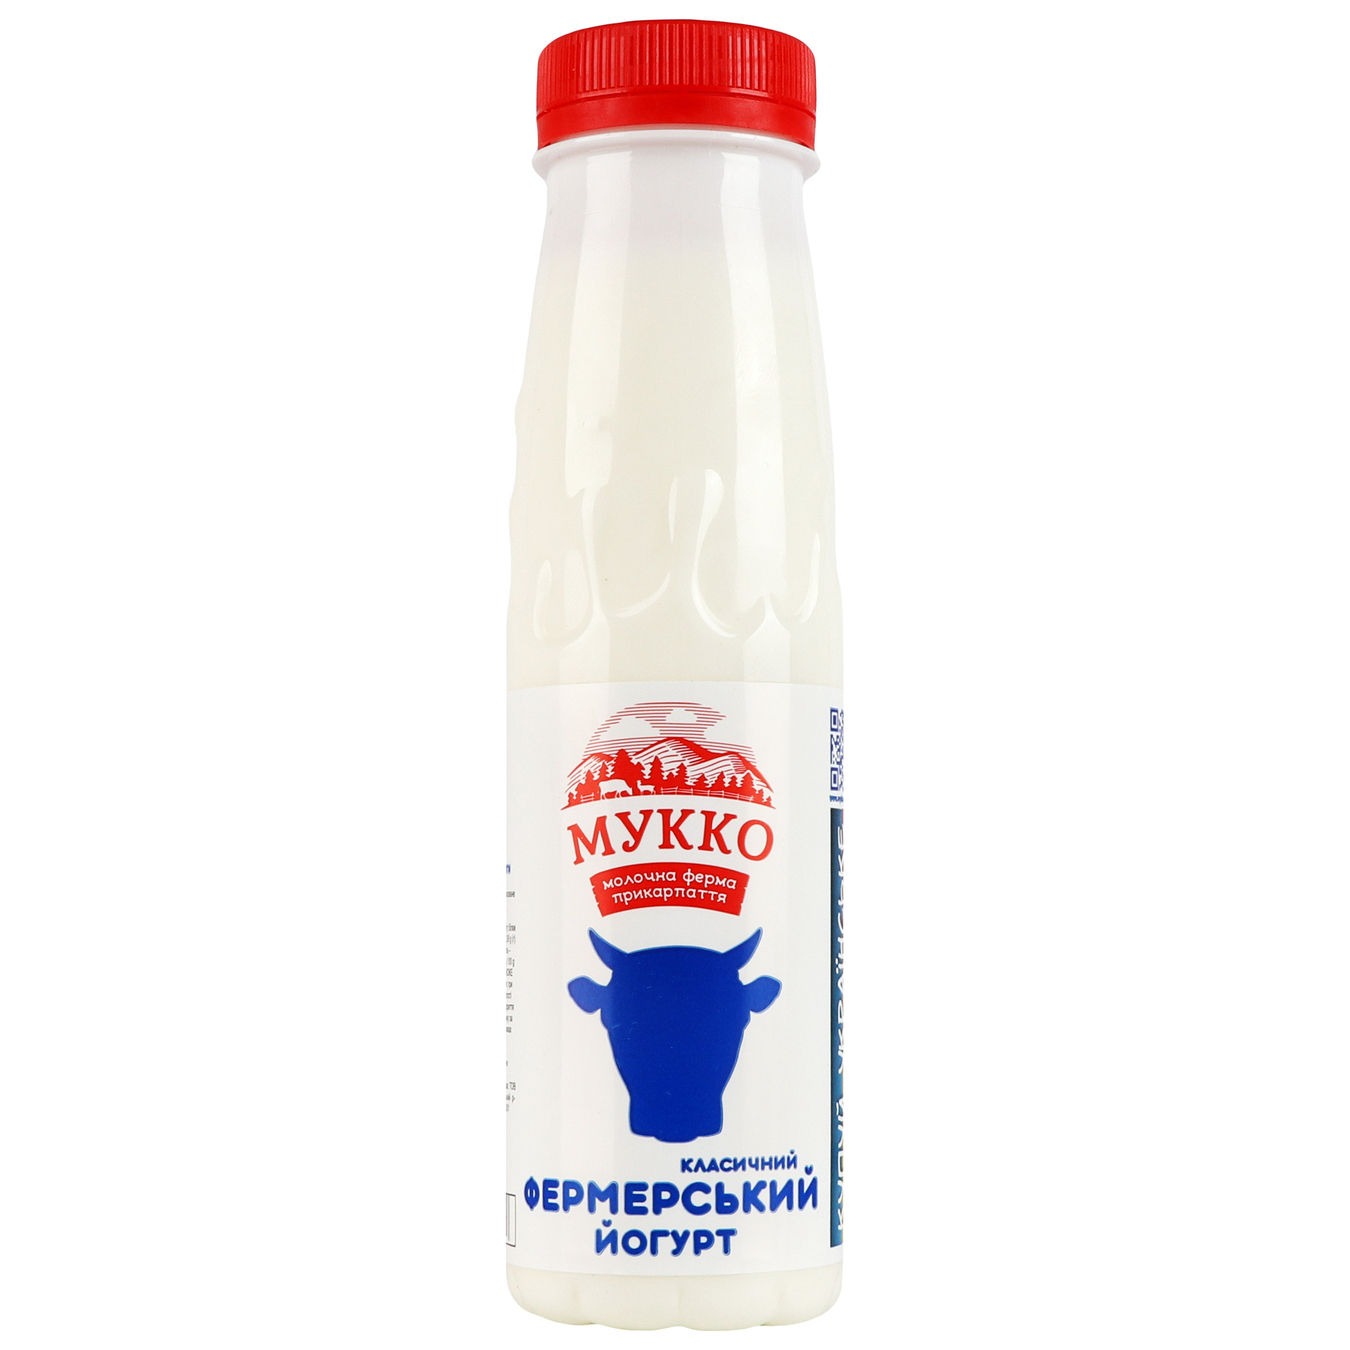 Mukko classic yogurt 2.6% 250g bottle